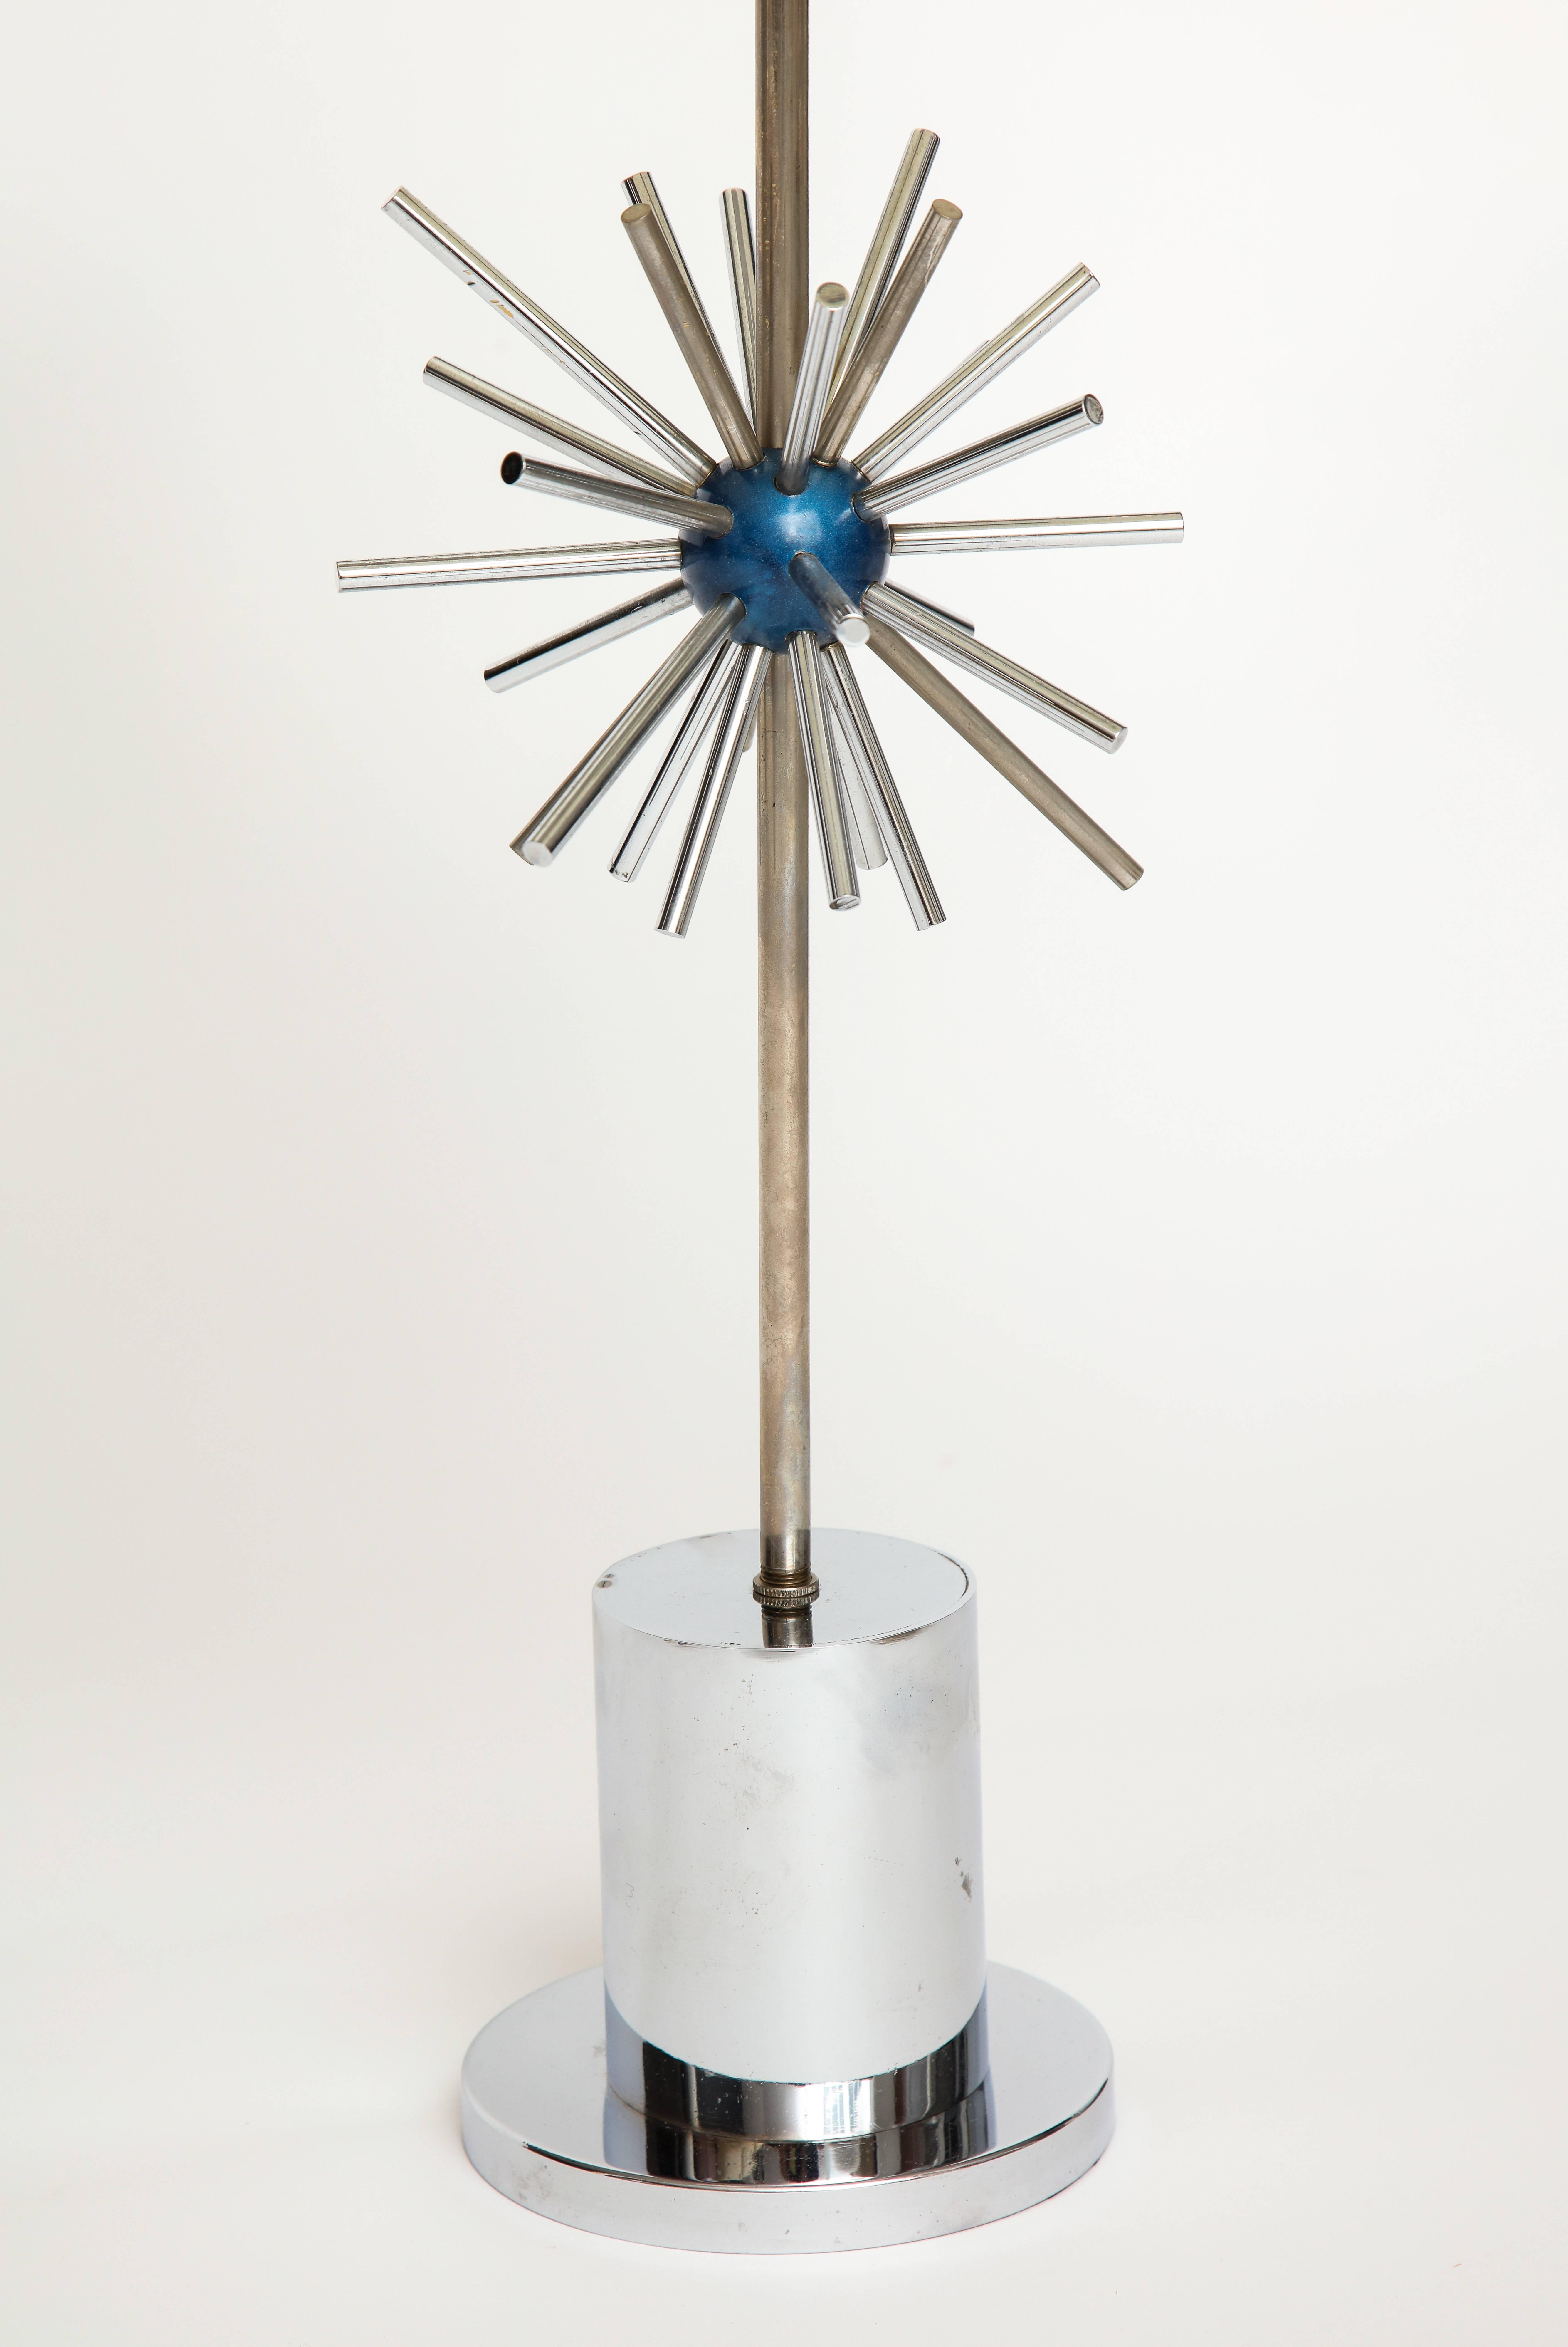 Lampe de bureau chromée avec design Sputnik bleu laqué, française, années 1970.

Belle lampe de bureau en très bon état. Conception originale.